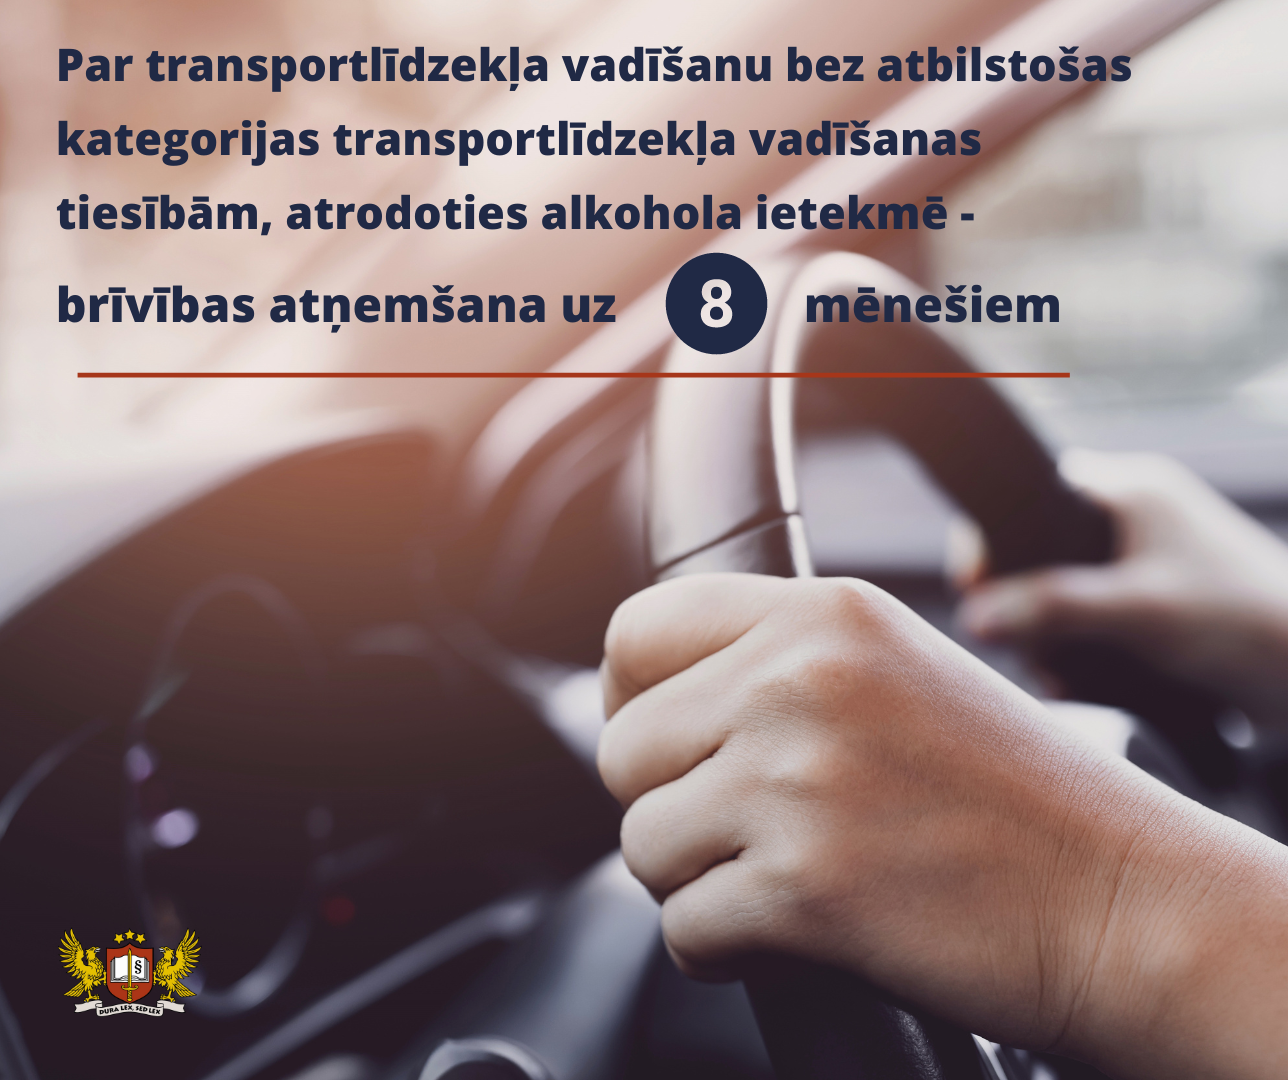 Prokuratūra vienošanās procesa kārtībā tiesai nodevusi krimināllietu par braukšanu reibumā bez atbilstošas kategorijas transportlīdzekļa vadīšanas tiesībām